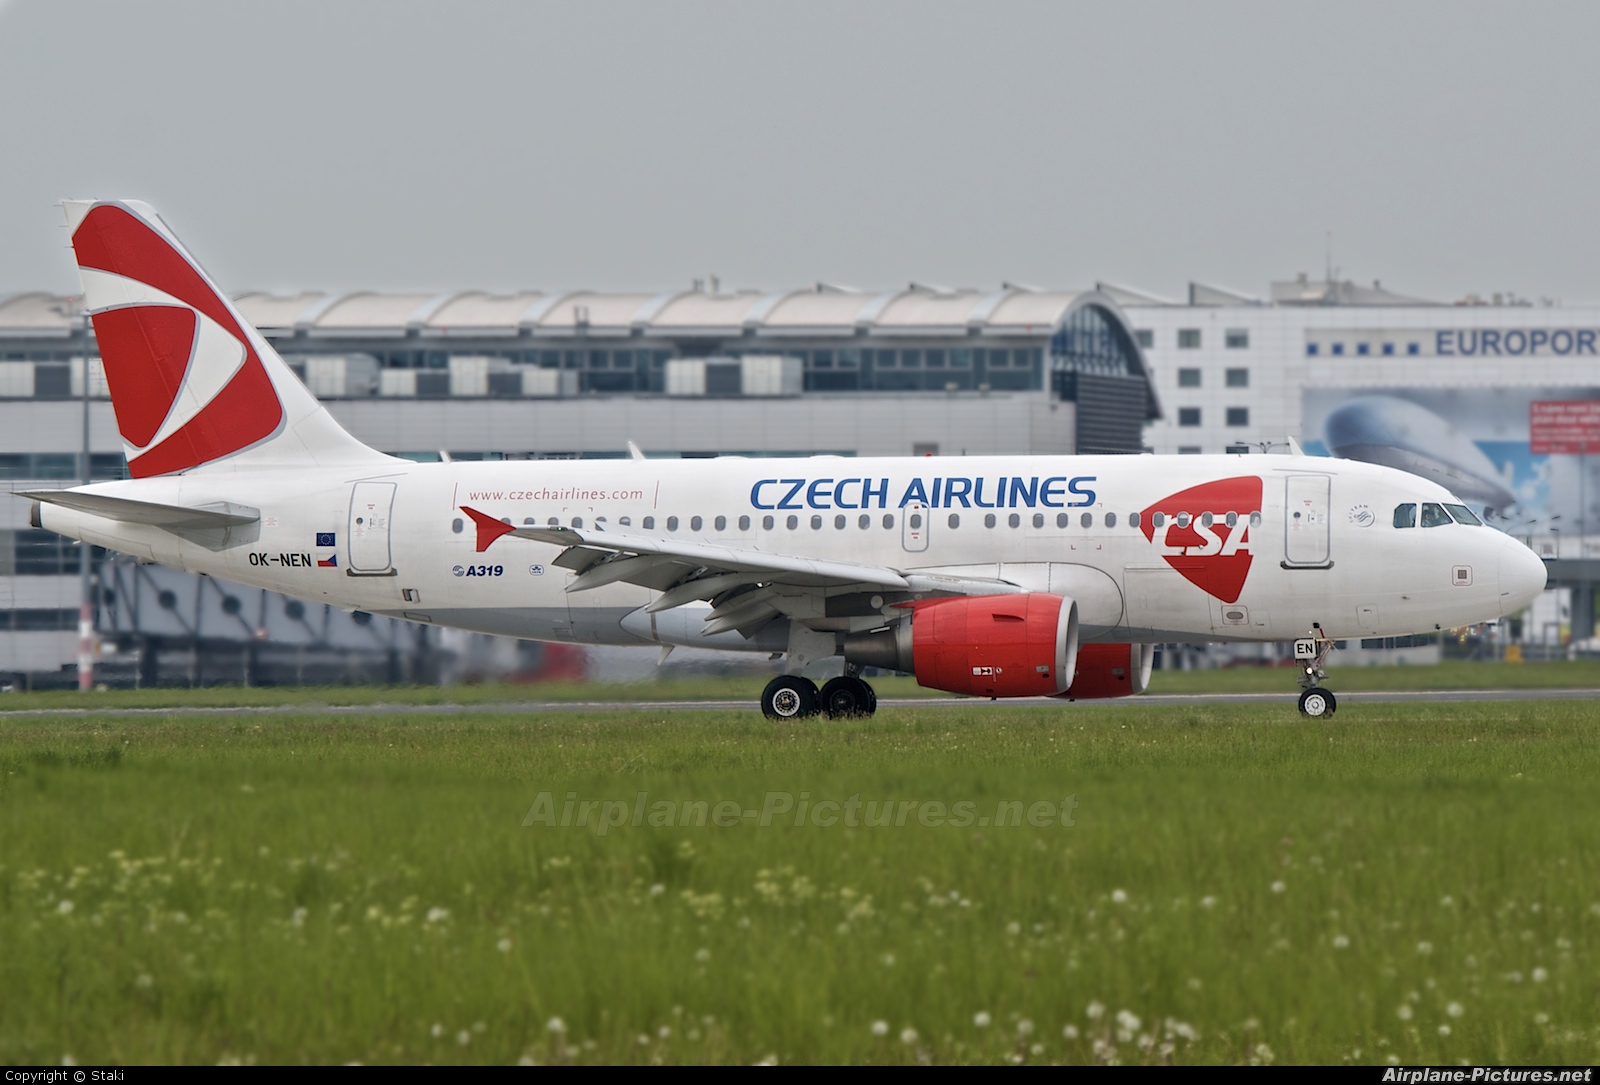 CSA - Czech Airlines OK-NEN aircraft at Prague - Václav Havel